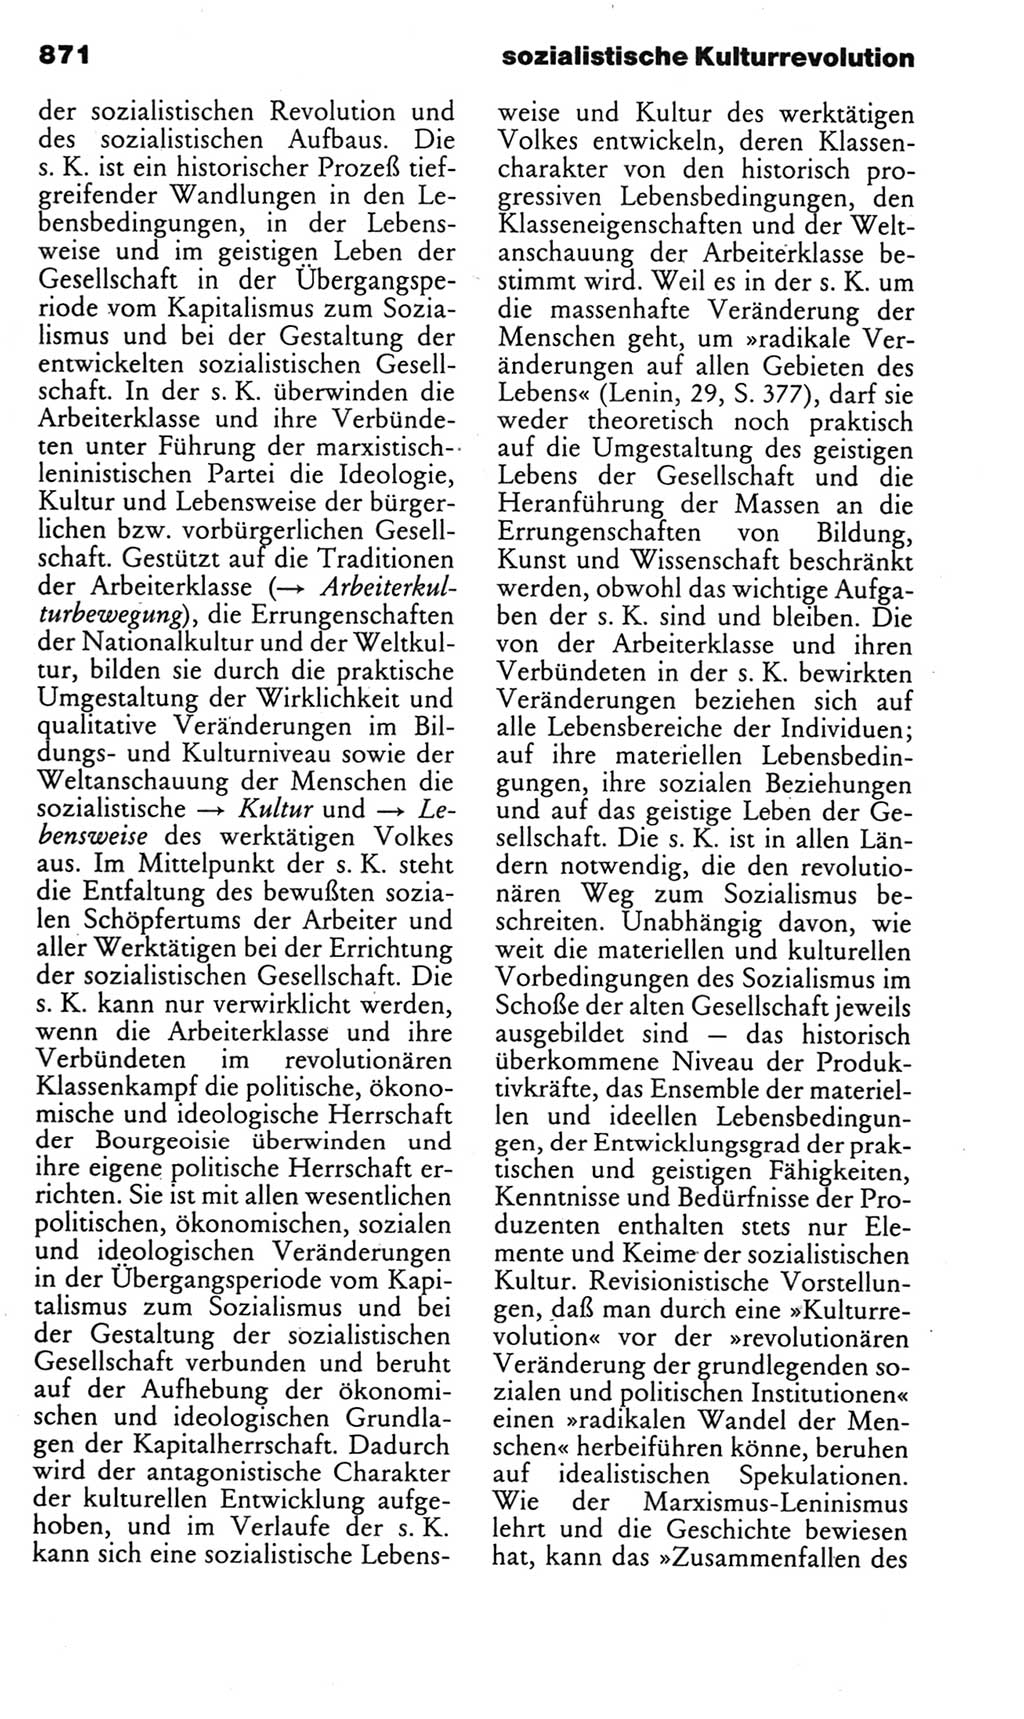 Kleines politisches Wörterbuch [Deutsche Demokratische Republik (DDR)] 1985, Seite 871 (Kl. pol. Wb. DDR 1985, S. 871)